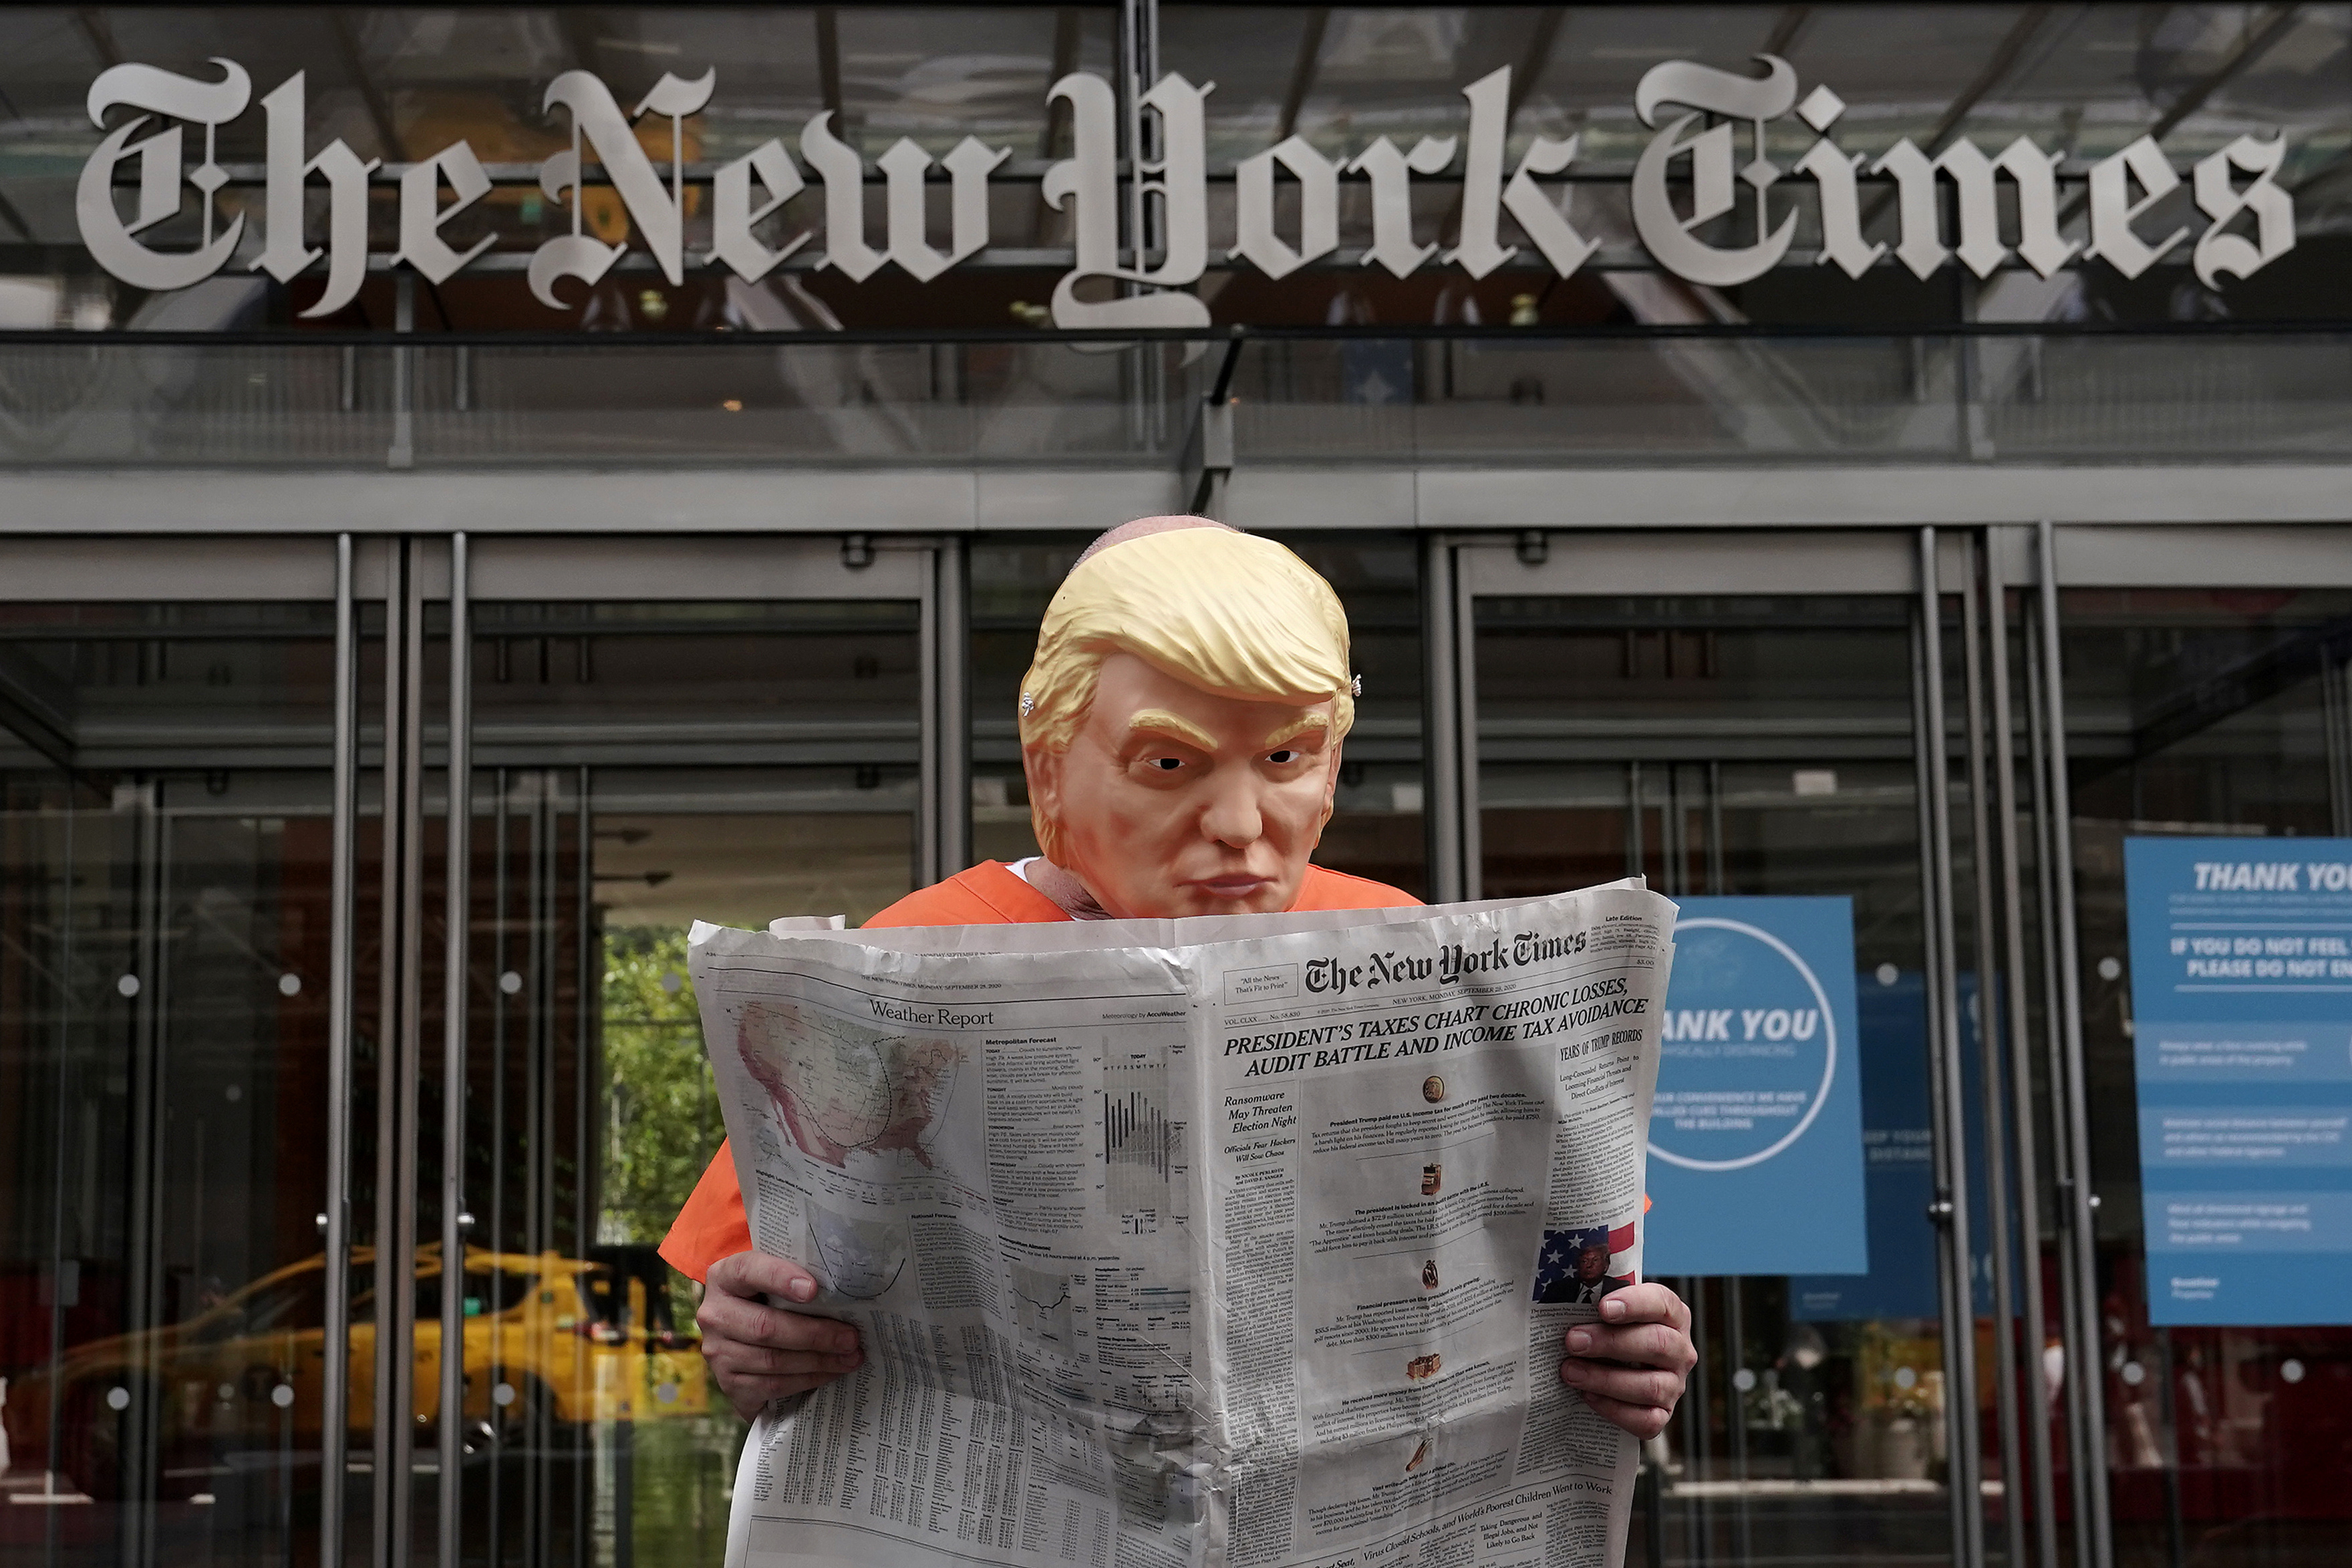 NYタイムズがトランプ氏に“宣戦布告”脱税疑惑を特ダネ報道、選挙に影響必至